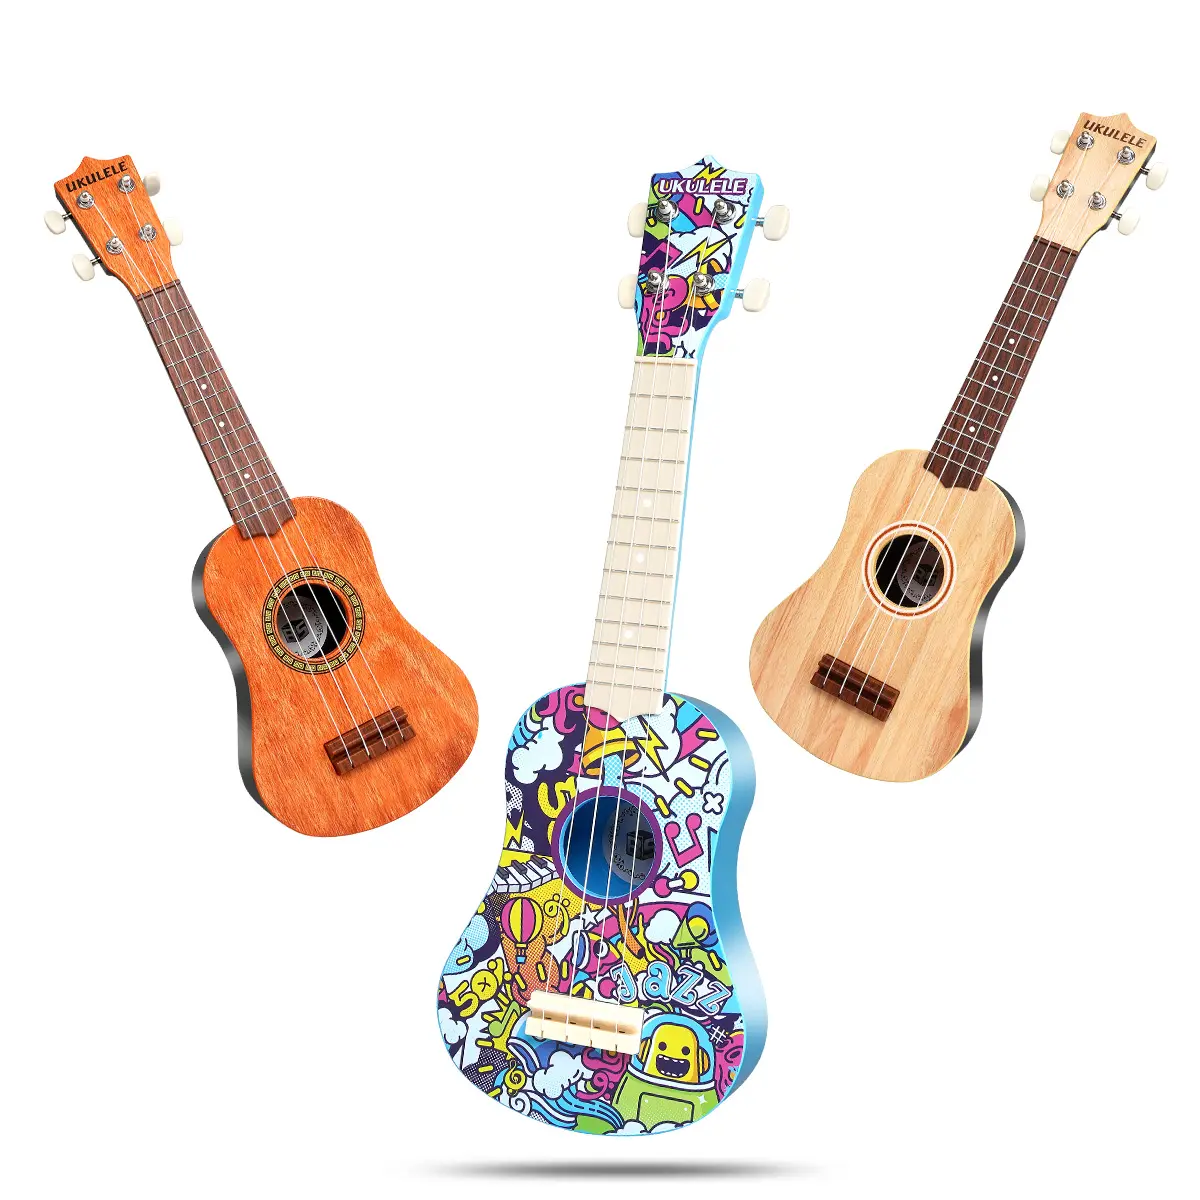 21 pollici Ukulele giocattolo chitarra musicale giocattoli strumento musicale simulato giocattoli educativi prodotti che vendono la migliore finta